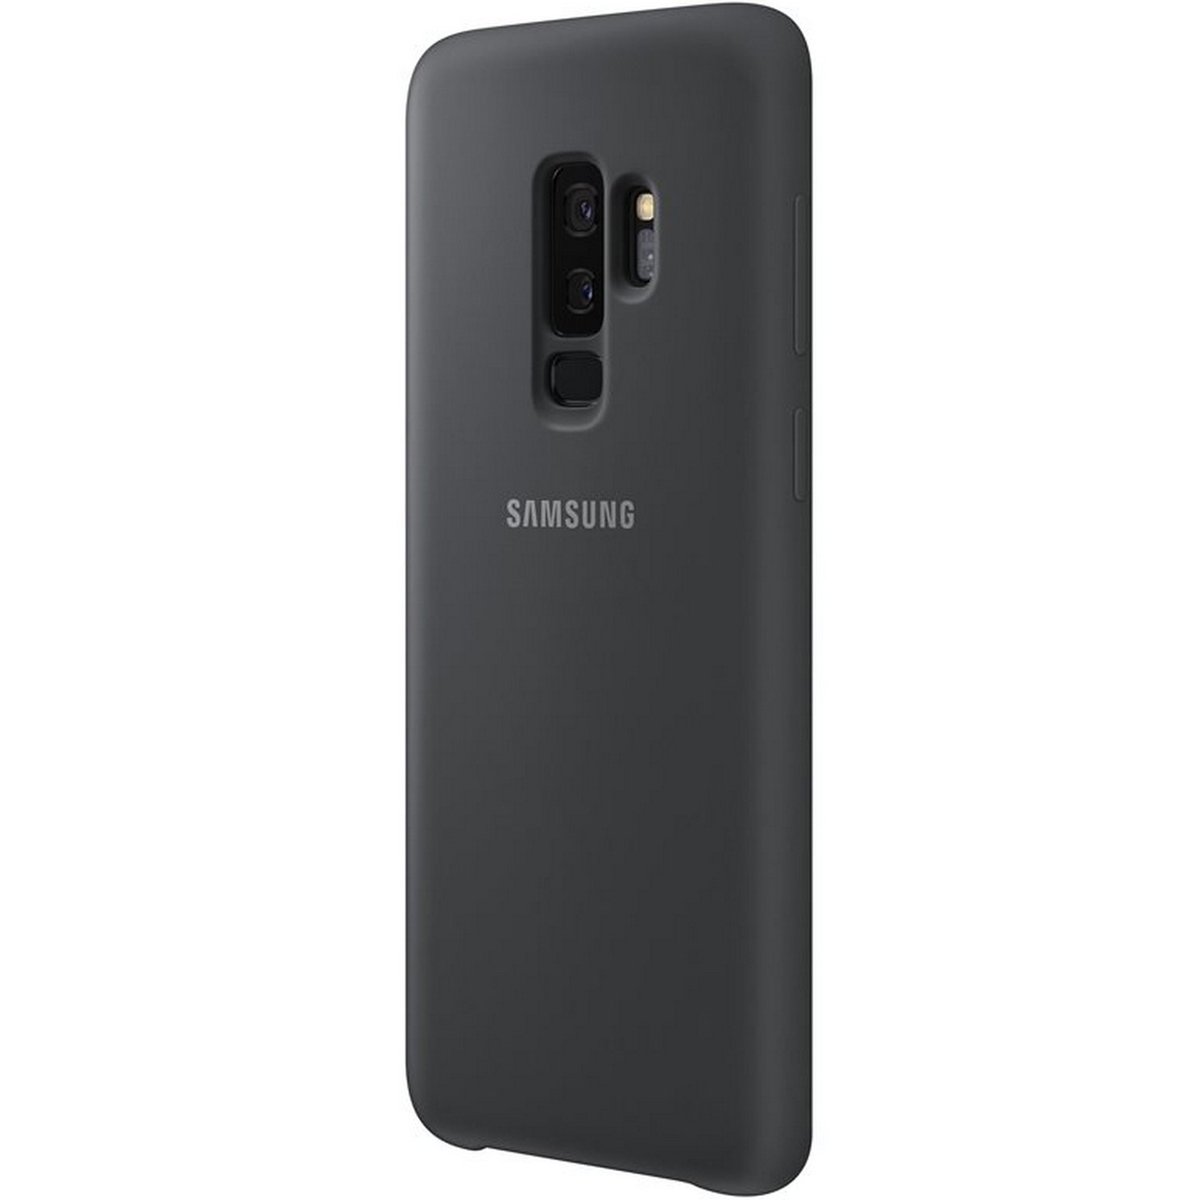 Samsung Galaxy S9+ Silicone Cover Black EF-PG965TBEGWW